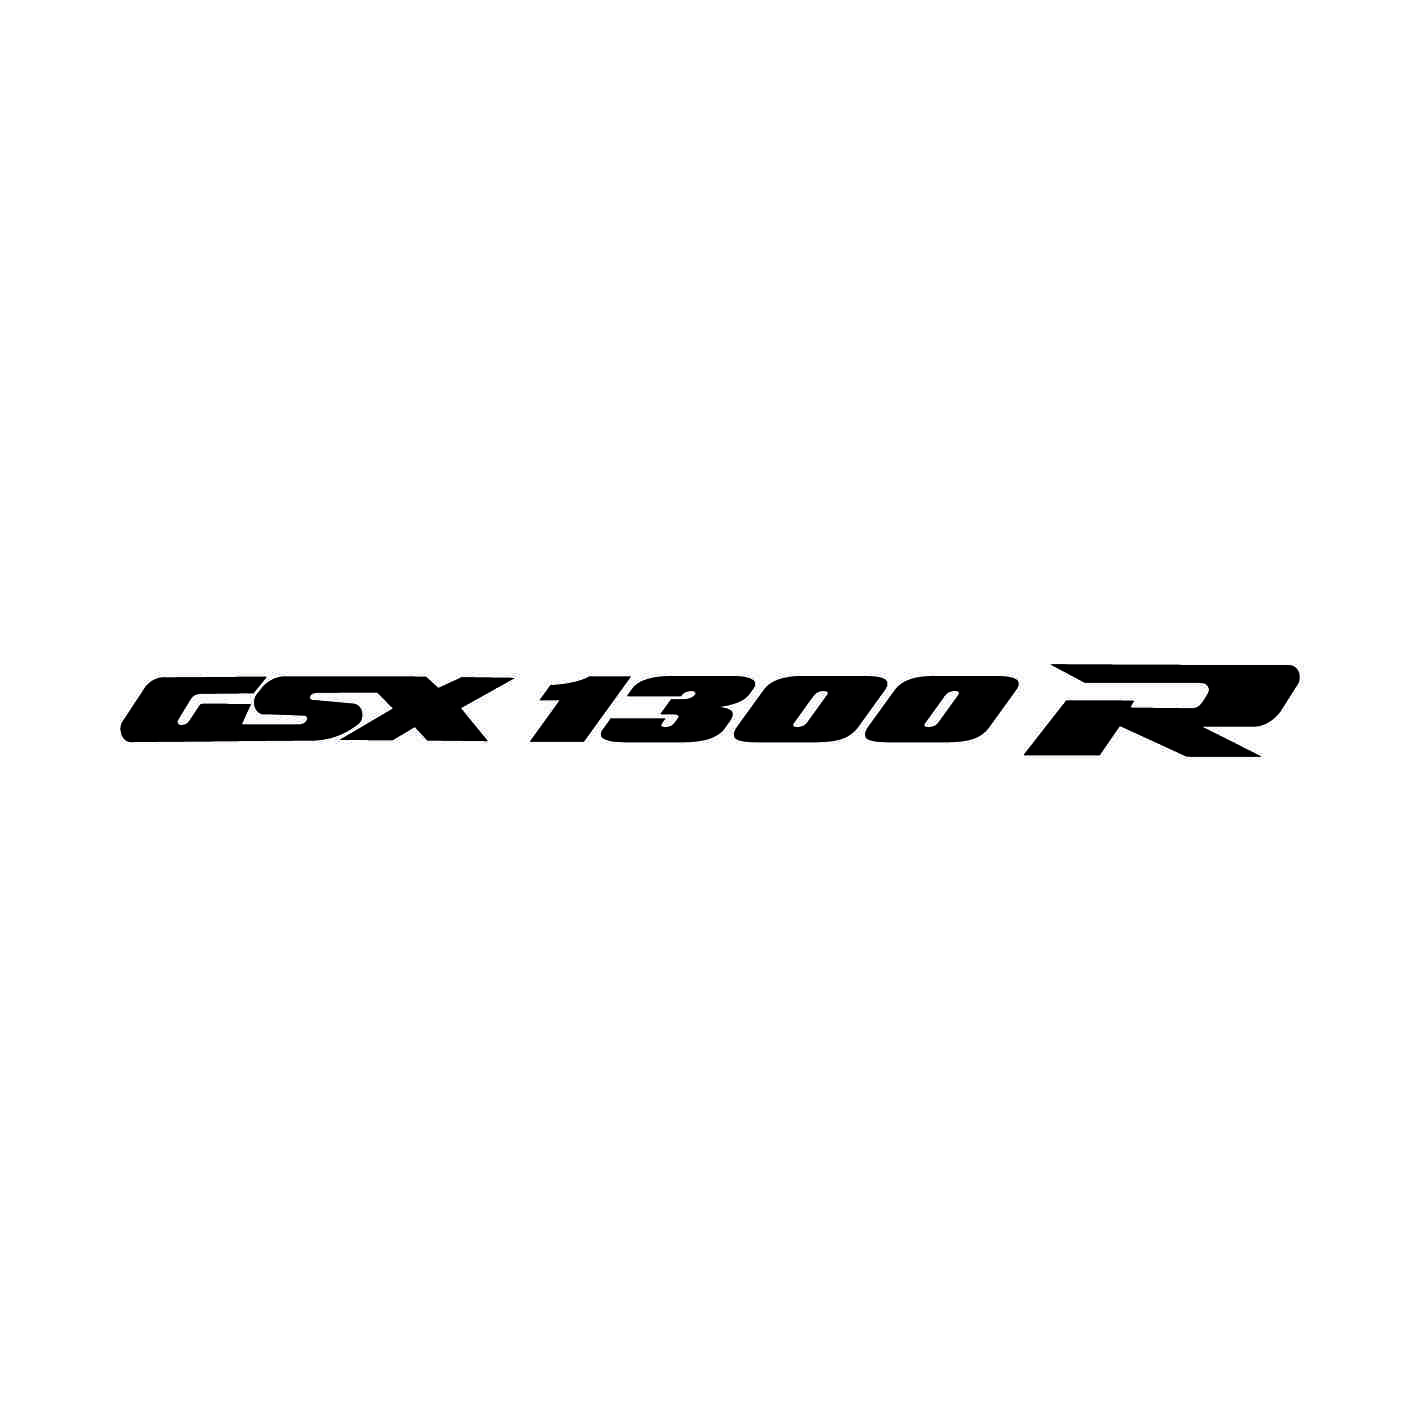 suzuki-ref4-gsx-1300r-stickers-moto-casque-scooter-sticker-autocollant-adhesifs